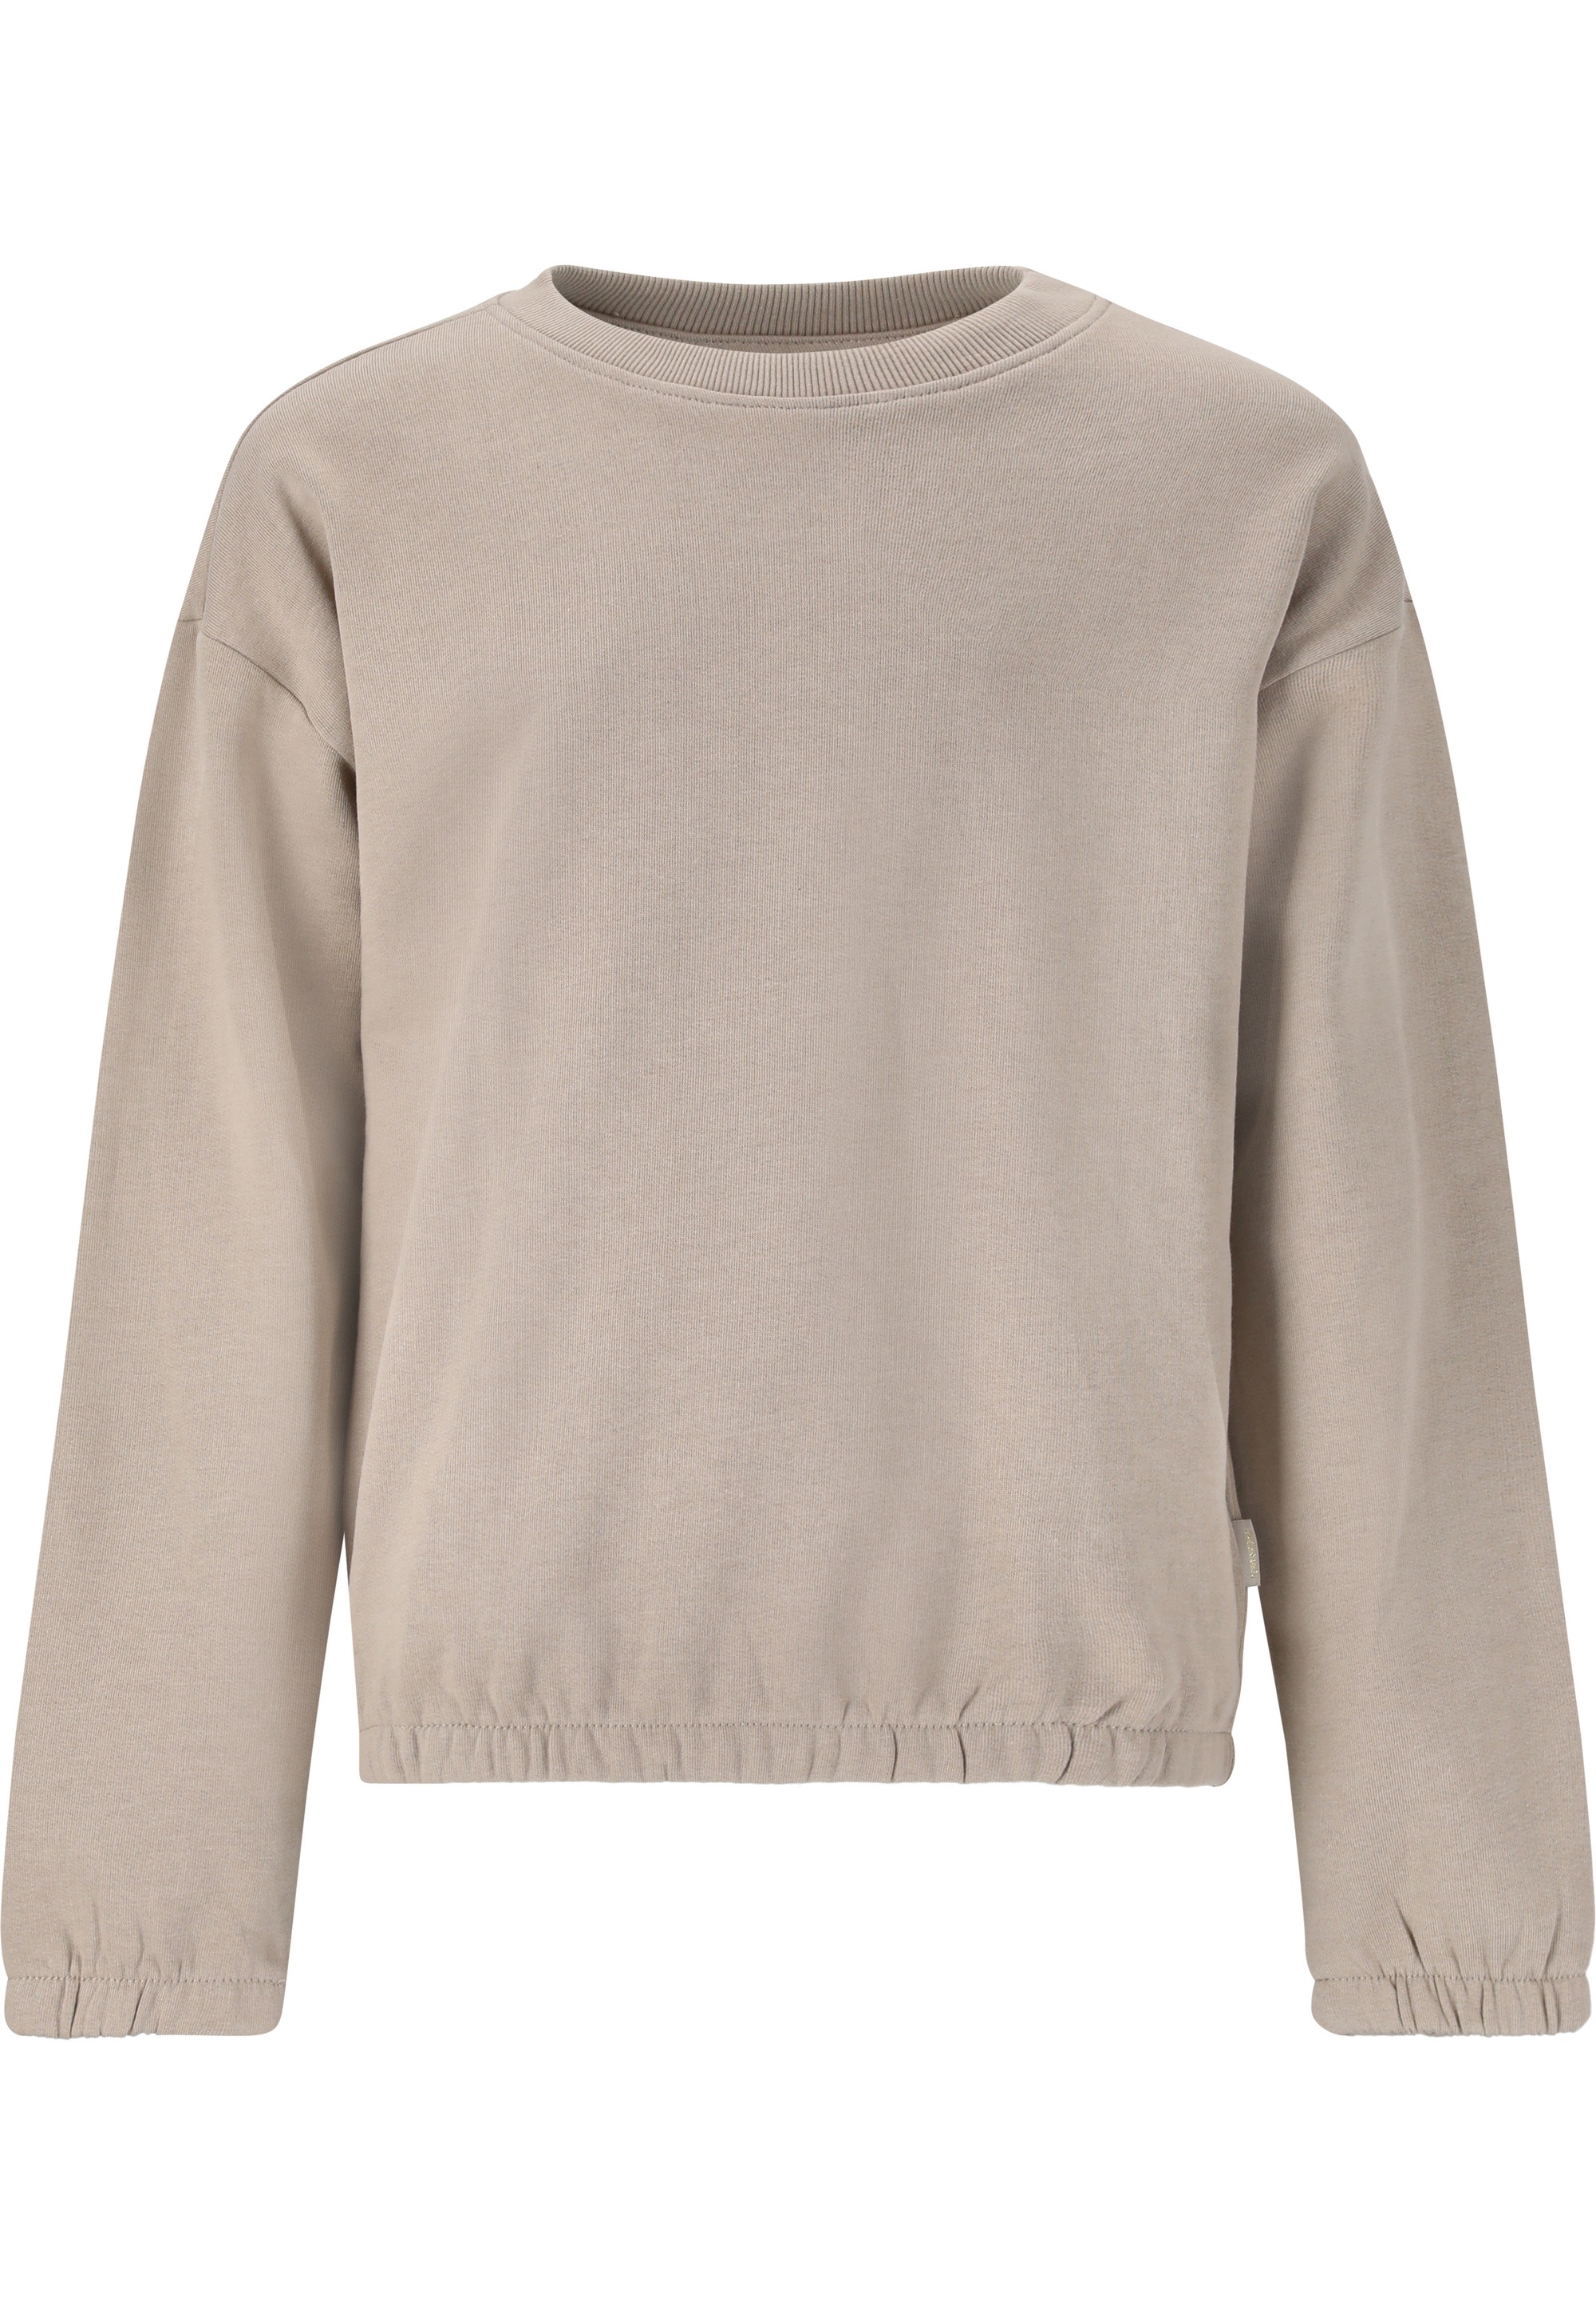 ENDURANCE Sweatshirt »Castall«, mit elastischen Ärmelbündchen